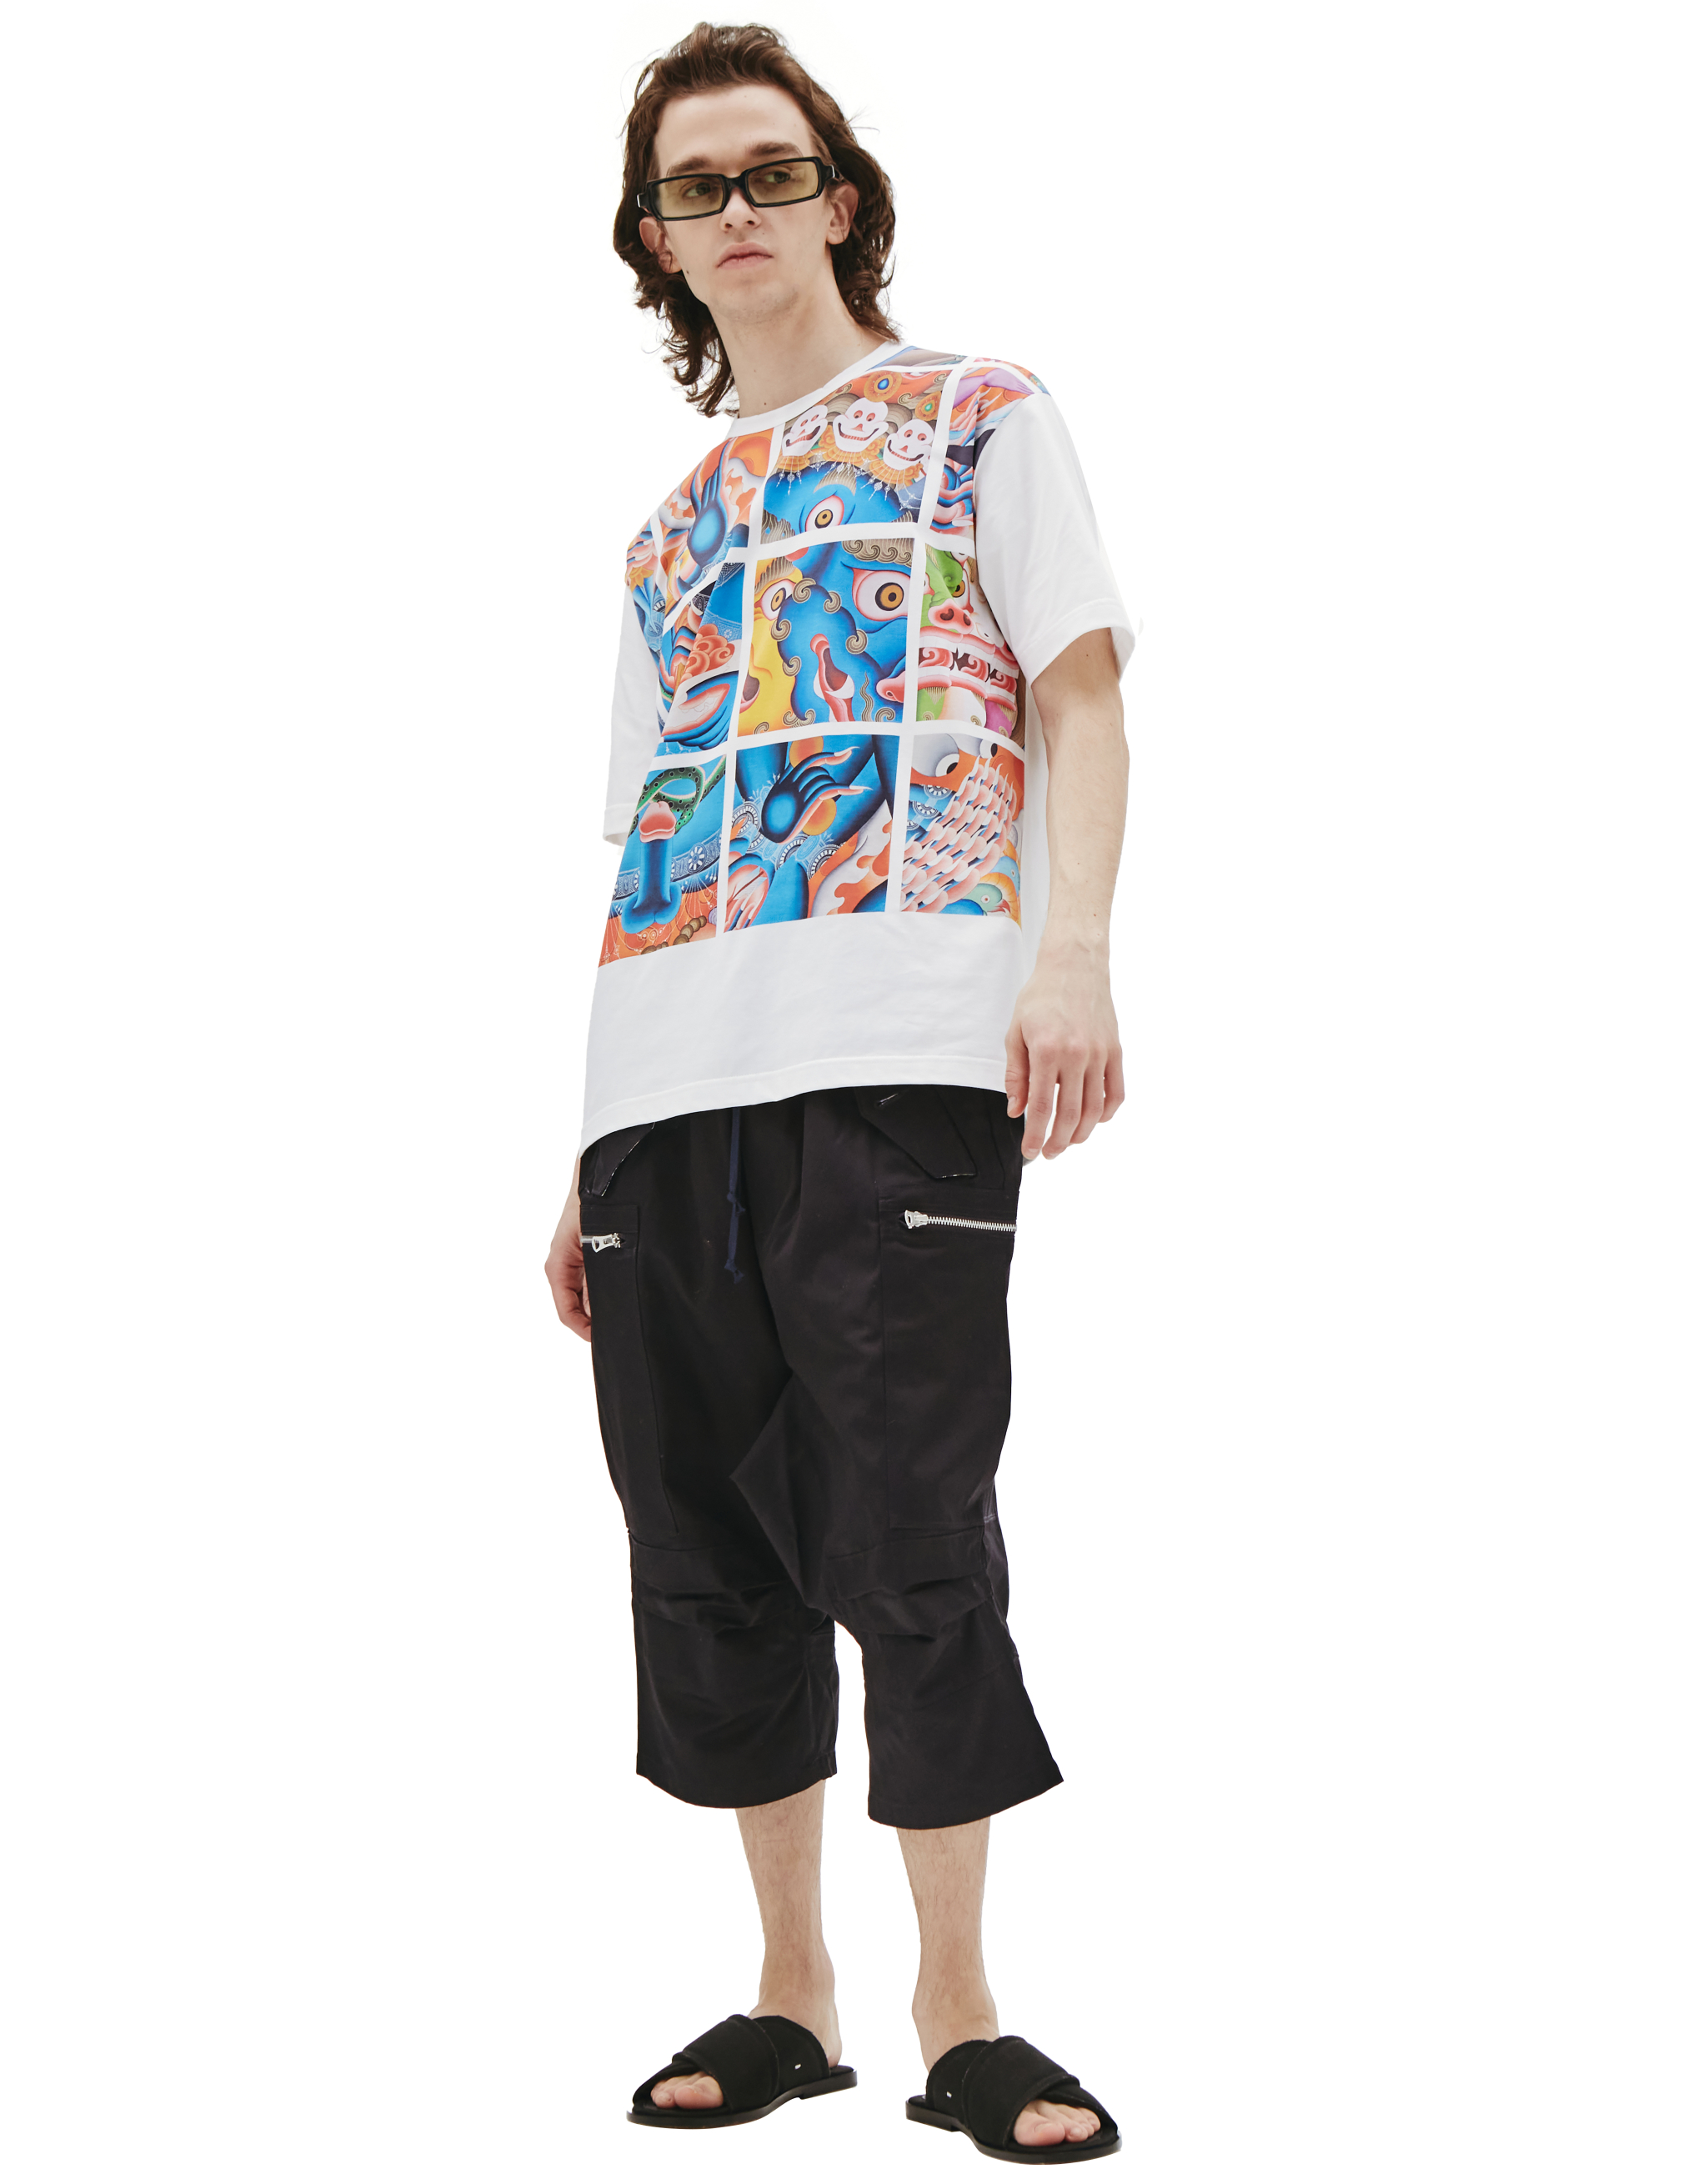 Хлопковая футболка с восточным принтом Junya Watanabe WI-T004-051-1, размер XL;L - фото 1